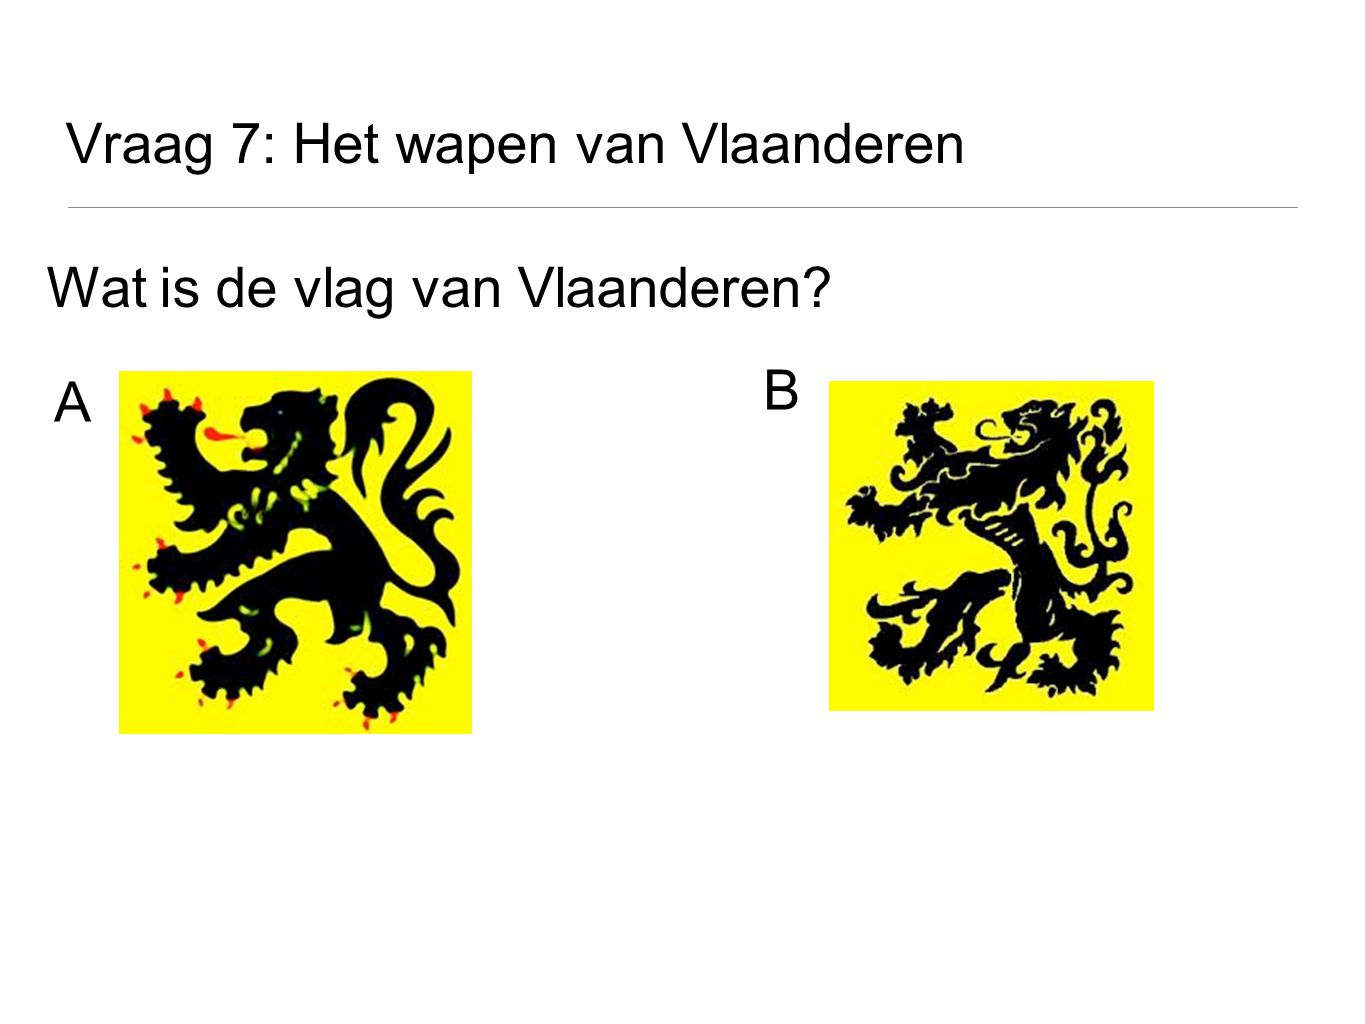 Vraag 7: Het wapen van Vlaanderen